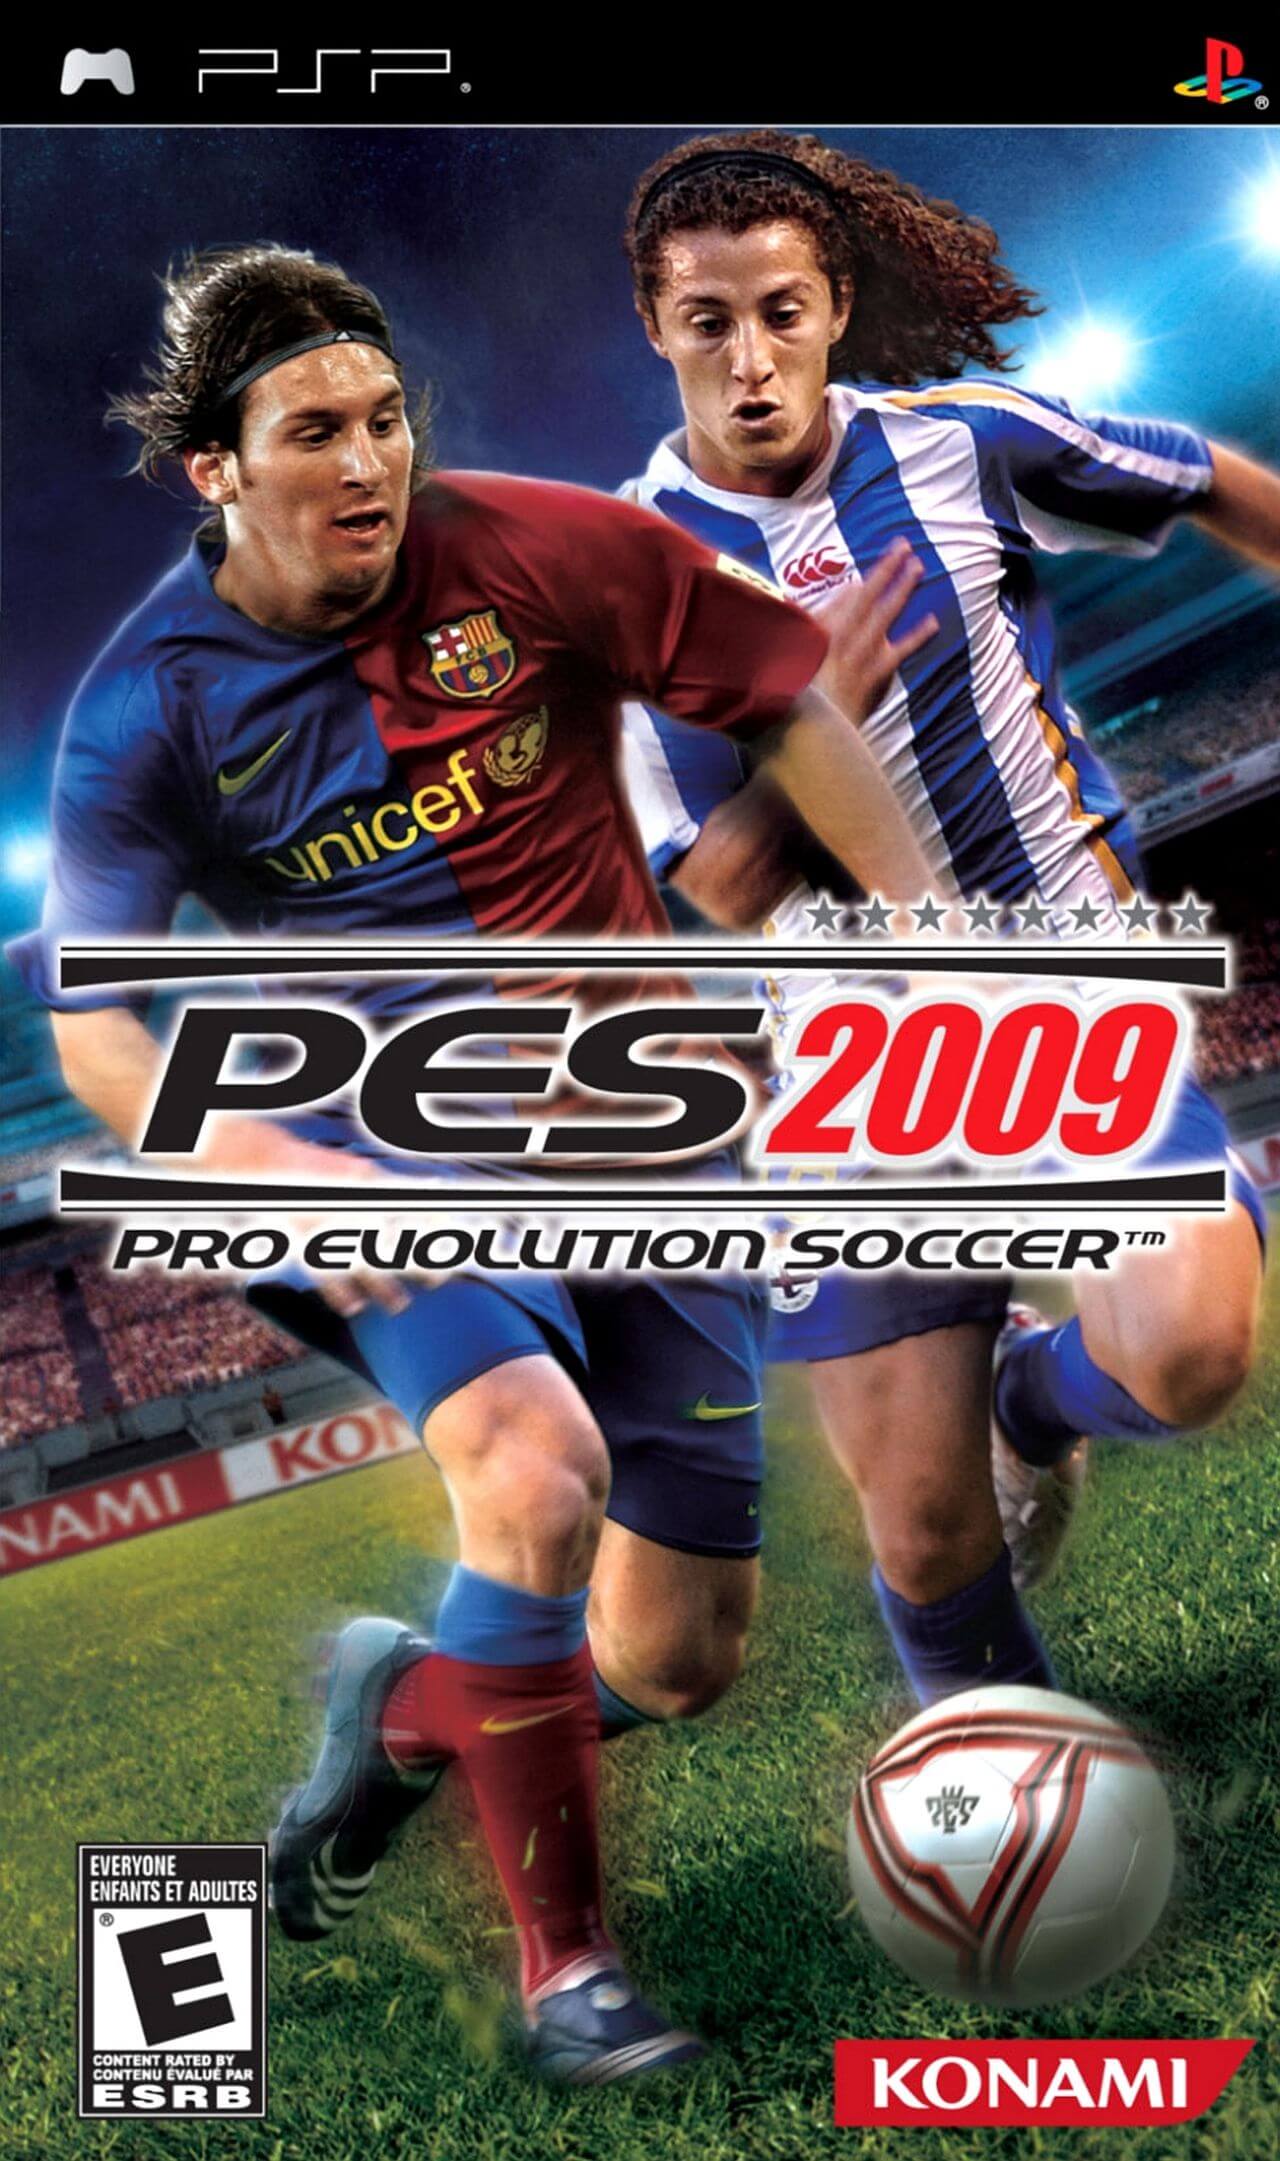 Pro Evolution Soccer 2009 - PSP ROM & ISO - Download